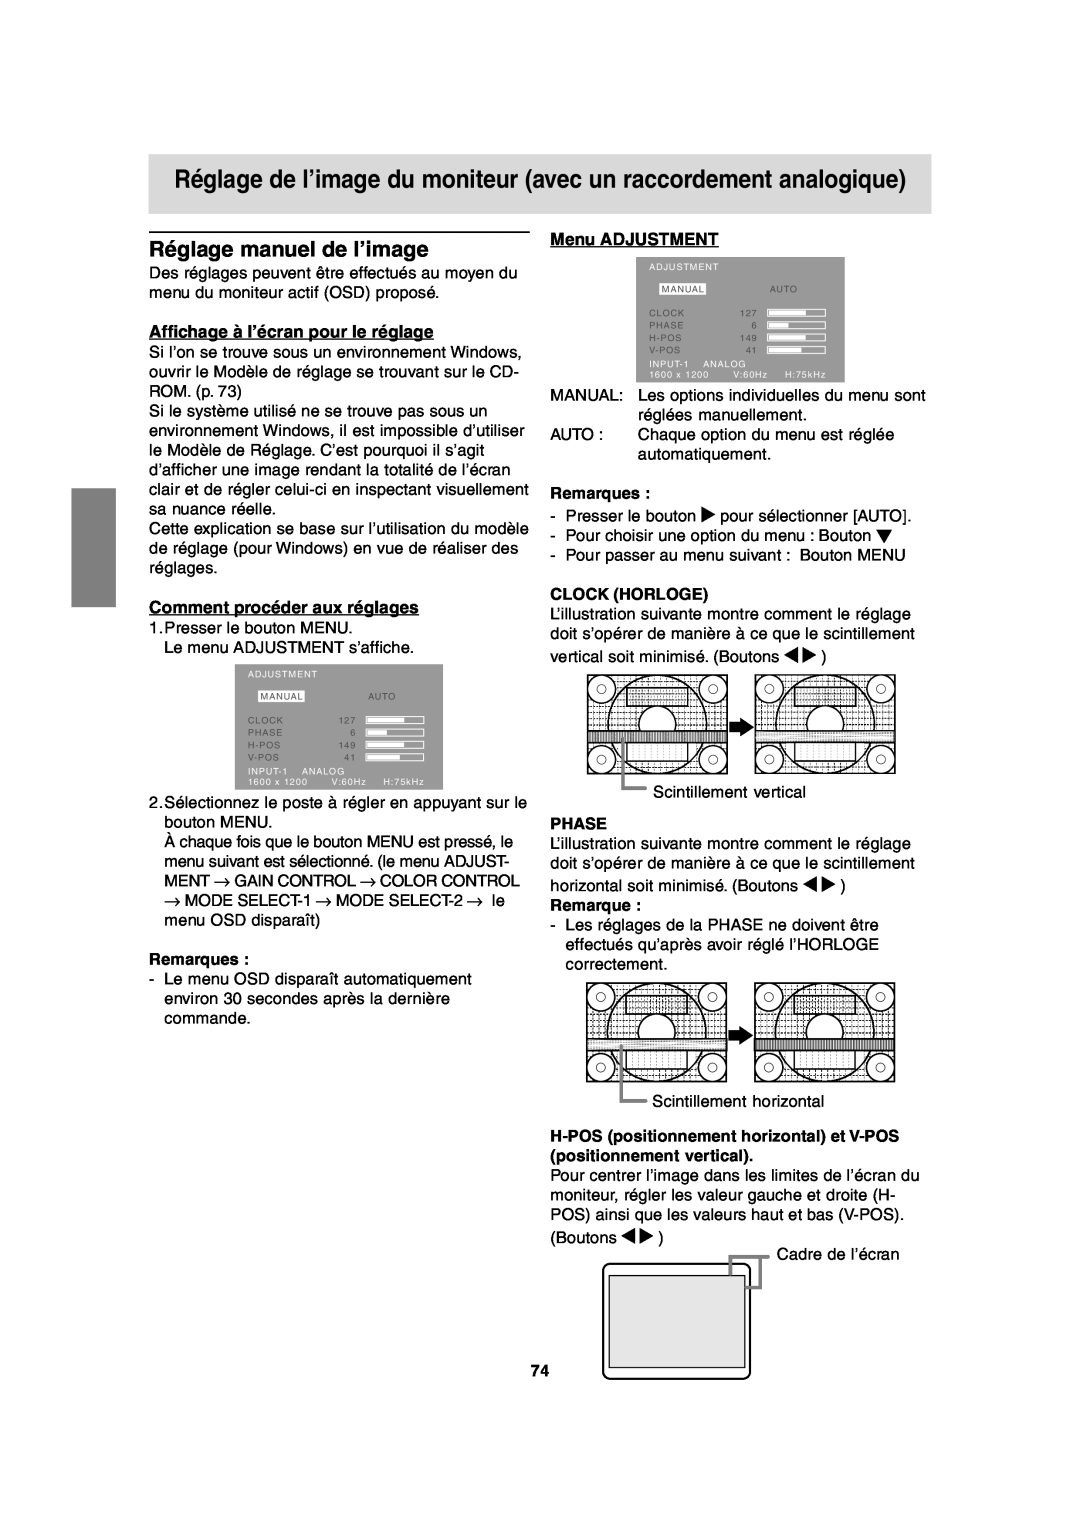 Sharp LL-T2020 Réglage de l’image du moniteur avec un raccordement analogique, Réglage manuel de l’image, Menu ADJUSTMENT 